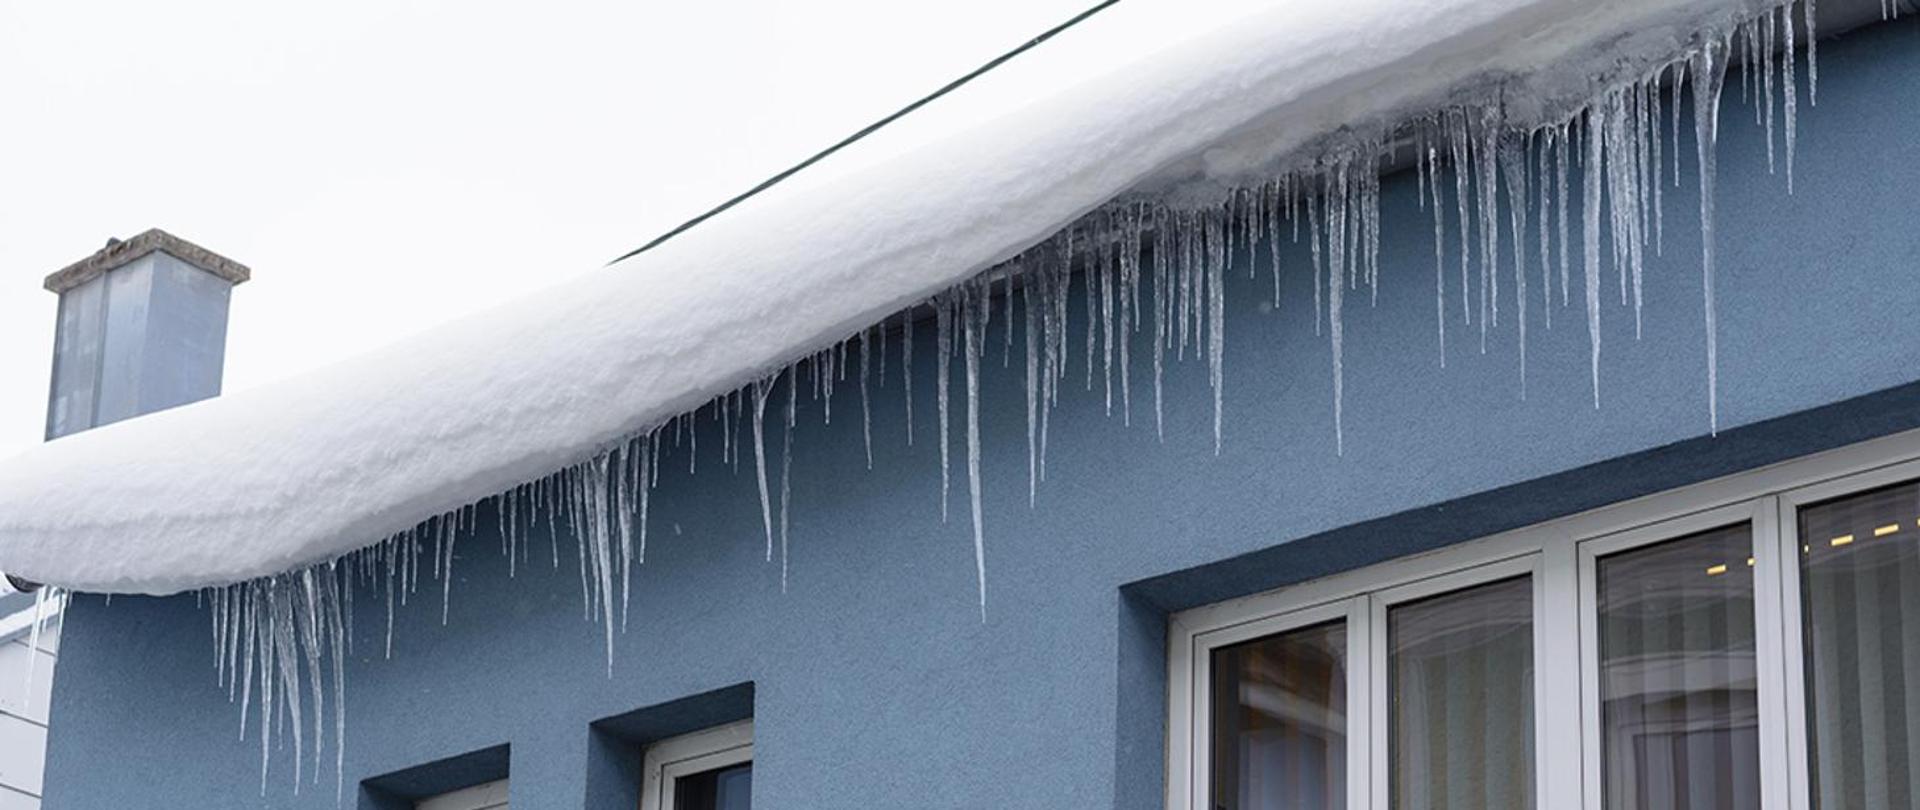 Zdjęcie przedstawia zalegający na dachu budynku śnieg i zwisające sople lodowe